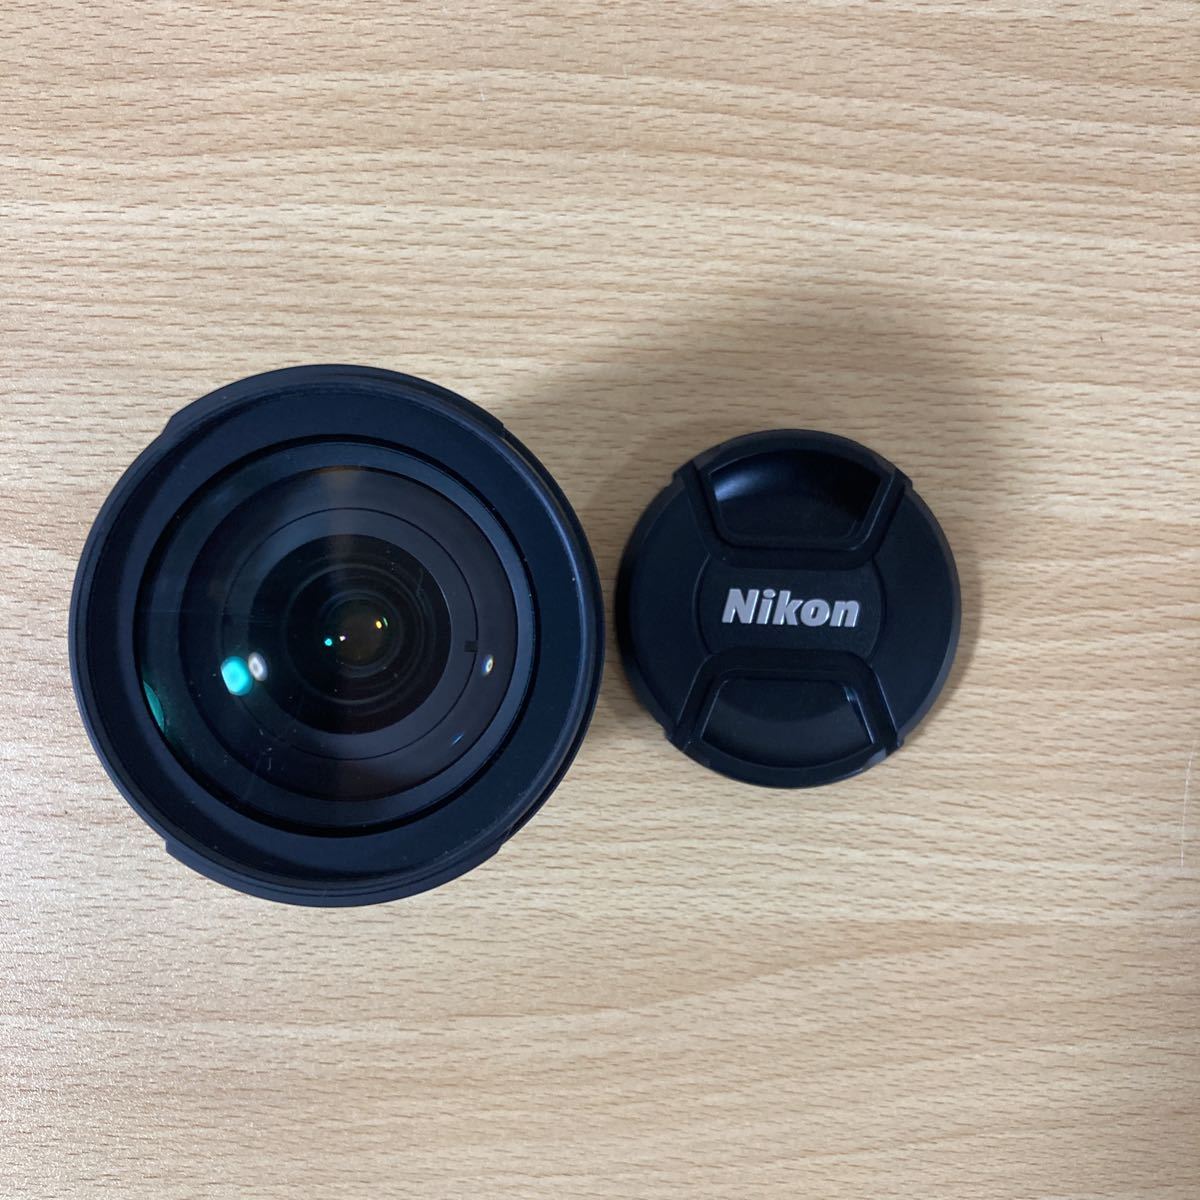 Nikon ニコン レンズ NIKKOR LENS DX Zoom-Nikkor 18-70mm f/3.5-4.5G IF-ED AF-SED DX for DIGITAL 光学機器 HB-37 取説 箱付 8 ス 874_画像3